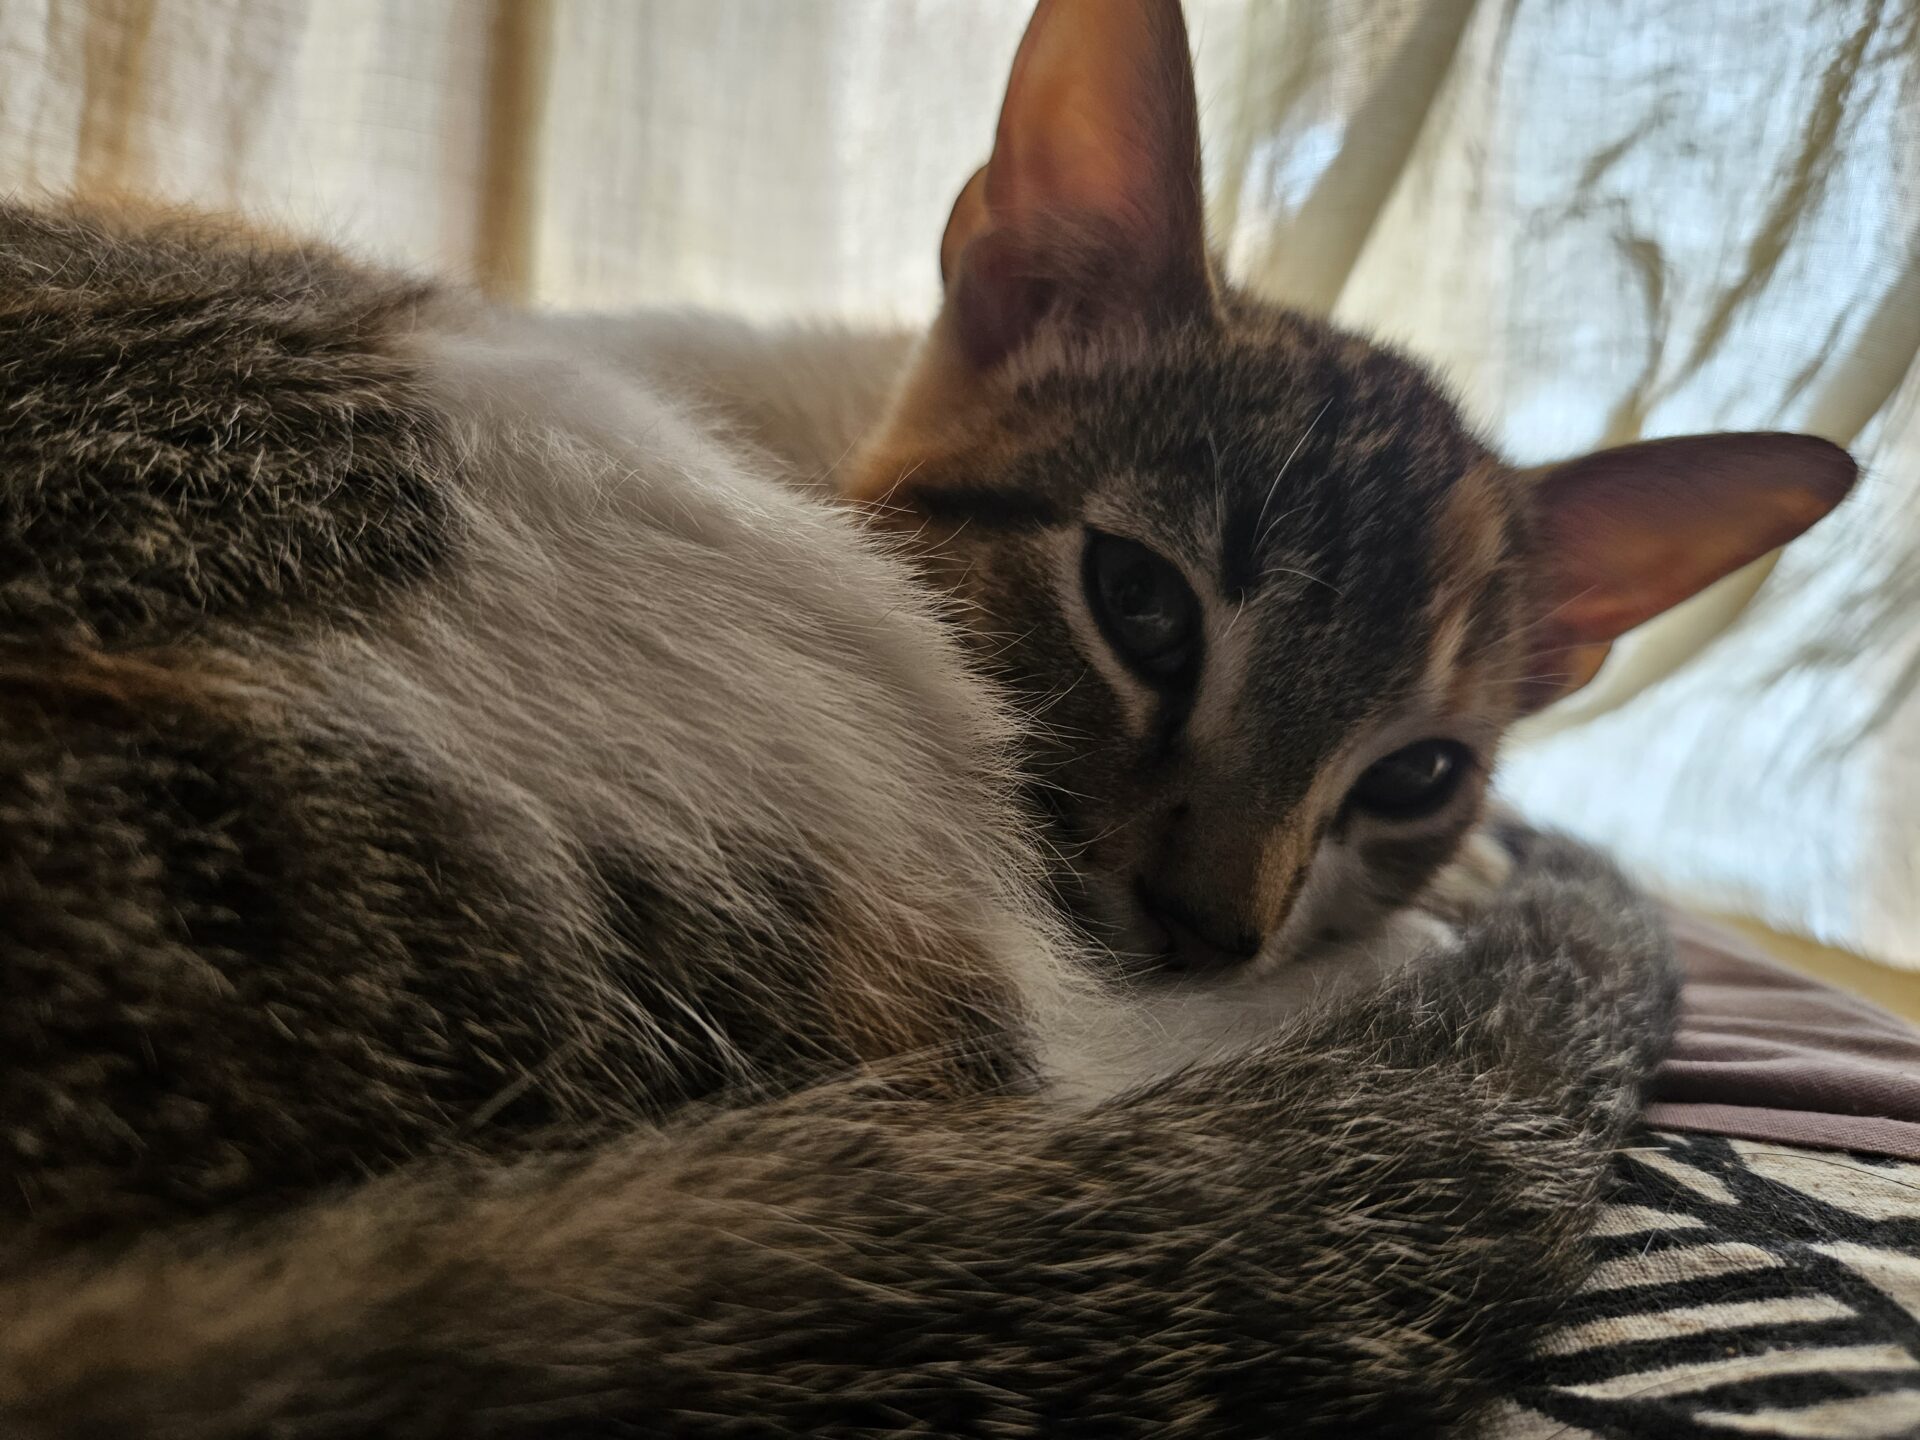 Lola es una gata tricolor, está tumbada hecha un ovillo y mirando a cámara